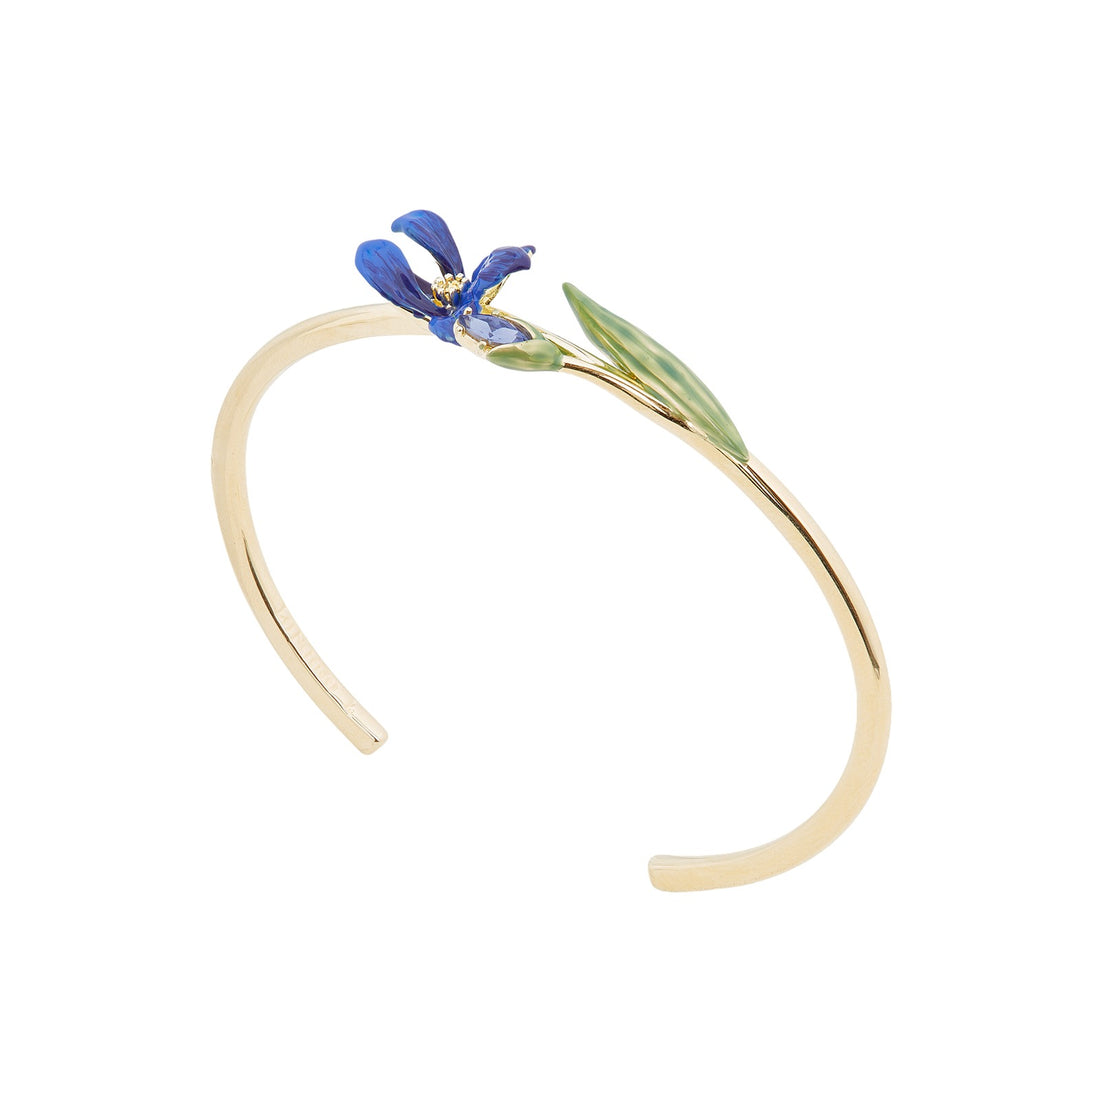 Les Néréides Siberian Iris and Faceted Glass Bangle Bracelet